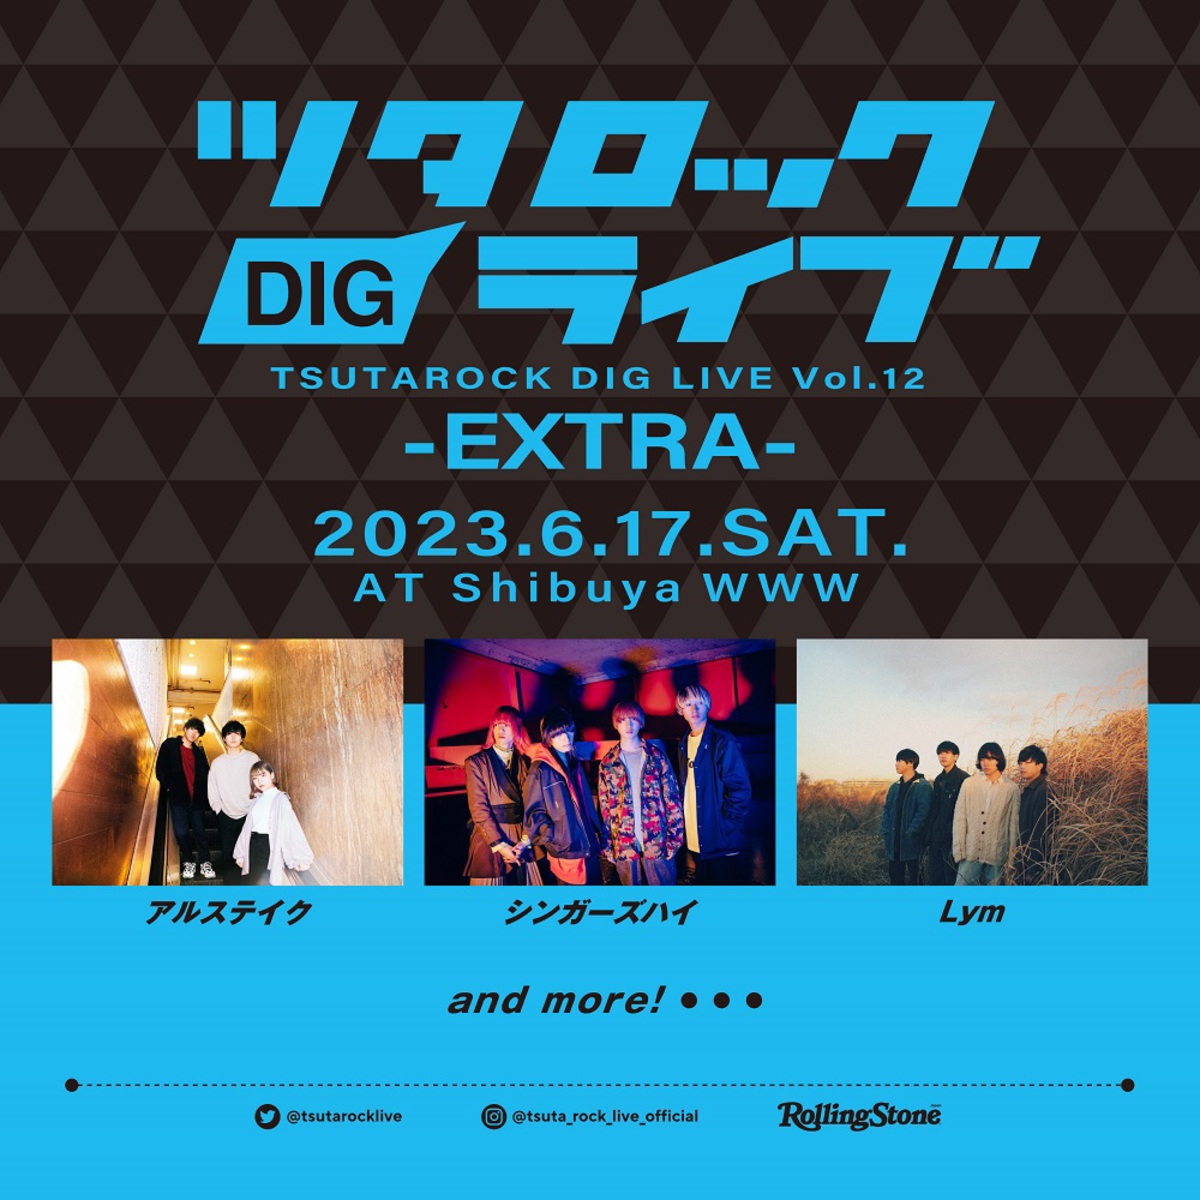 ツタロックDIG LIVE Vol.12-EXTRA-、渋谷WWWにて6/17開催。第1弾アーティストでシンガーズハイ、アルステイク、Lym発表